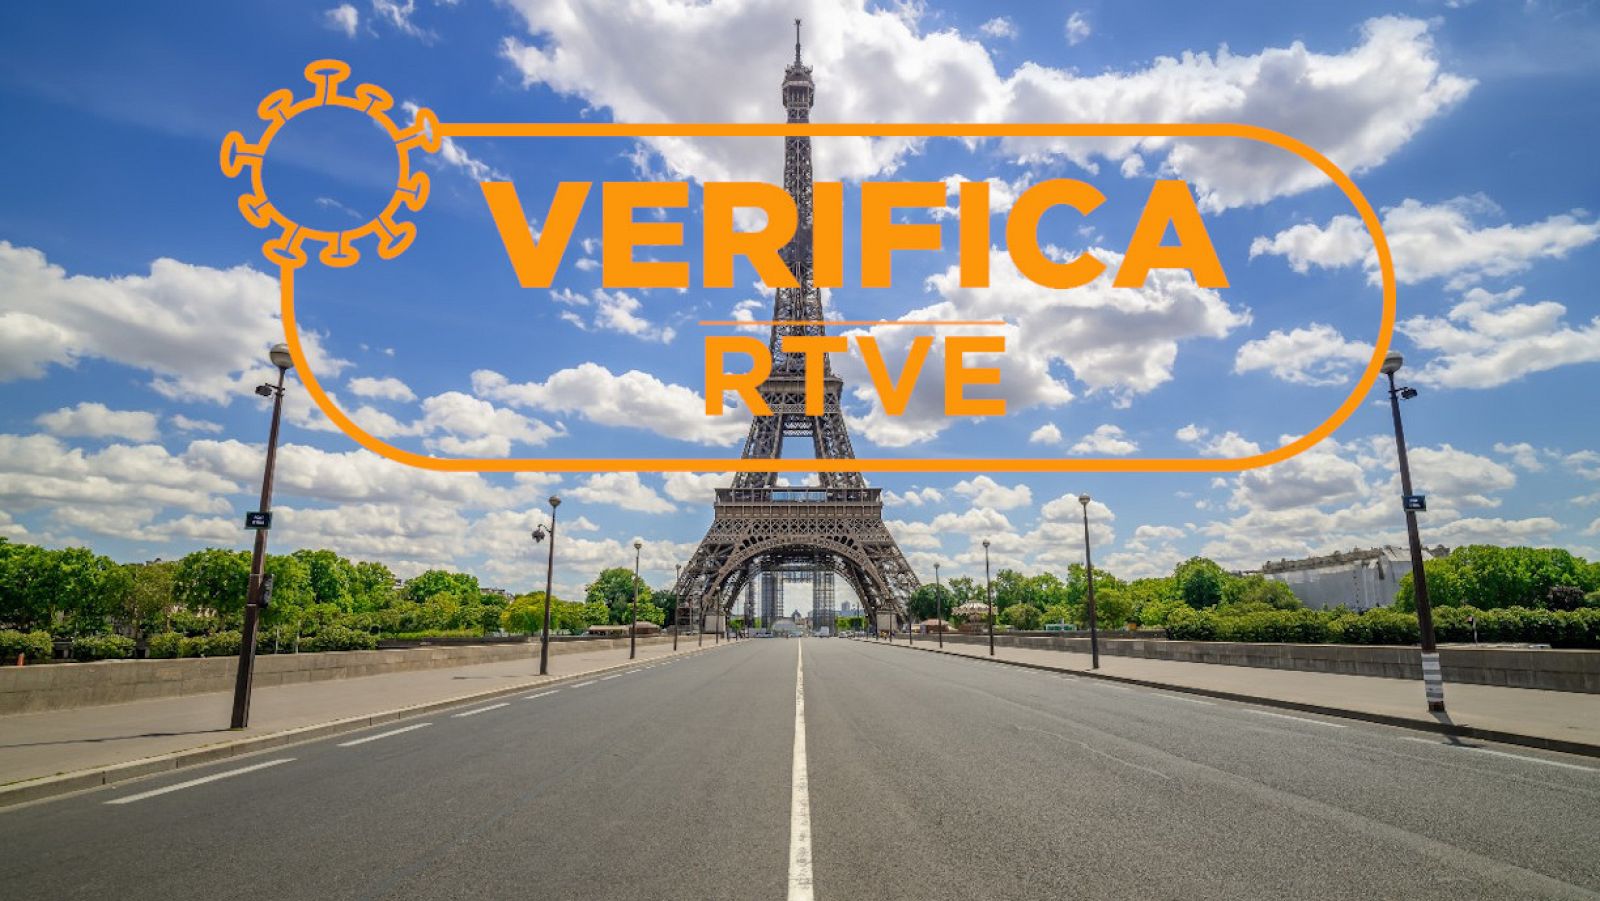 Fotografía de la Torre Eiffel con las calles vacías y el sello de VerificaRTVE